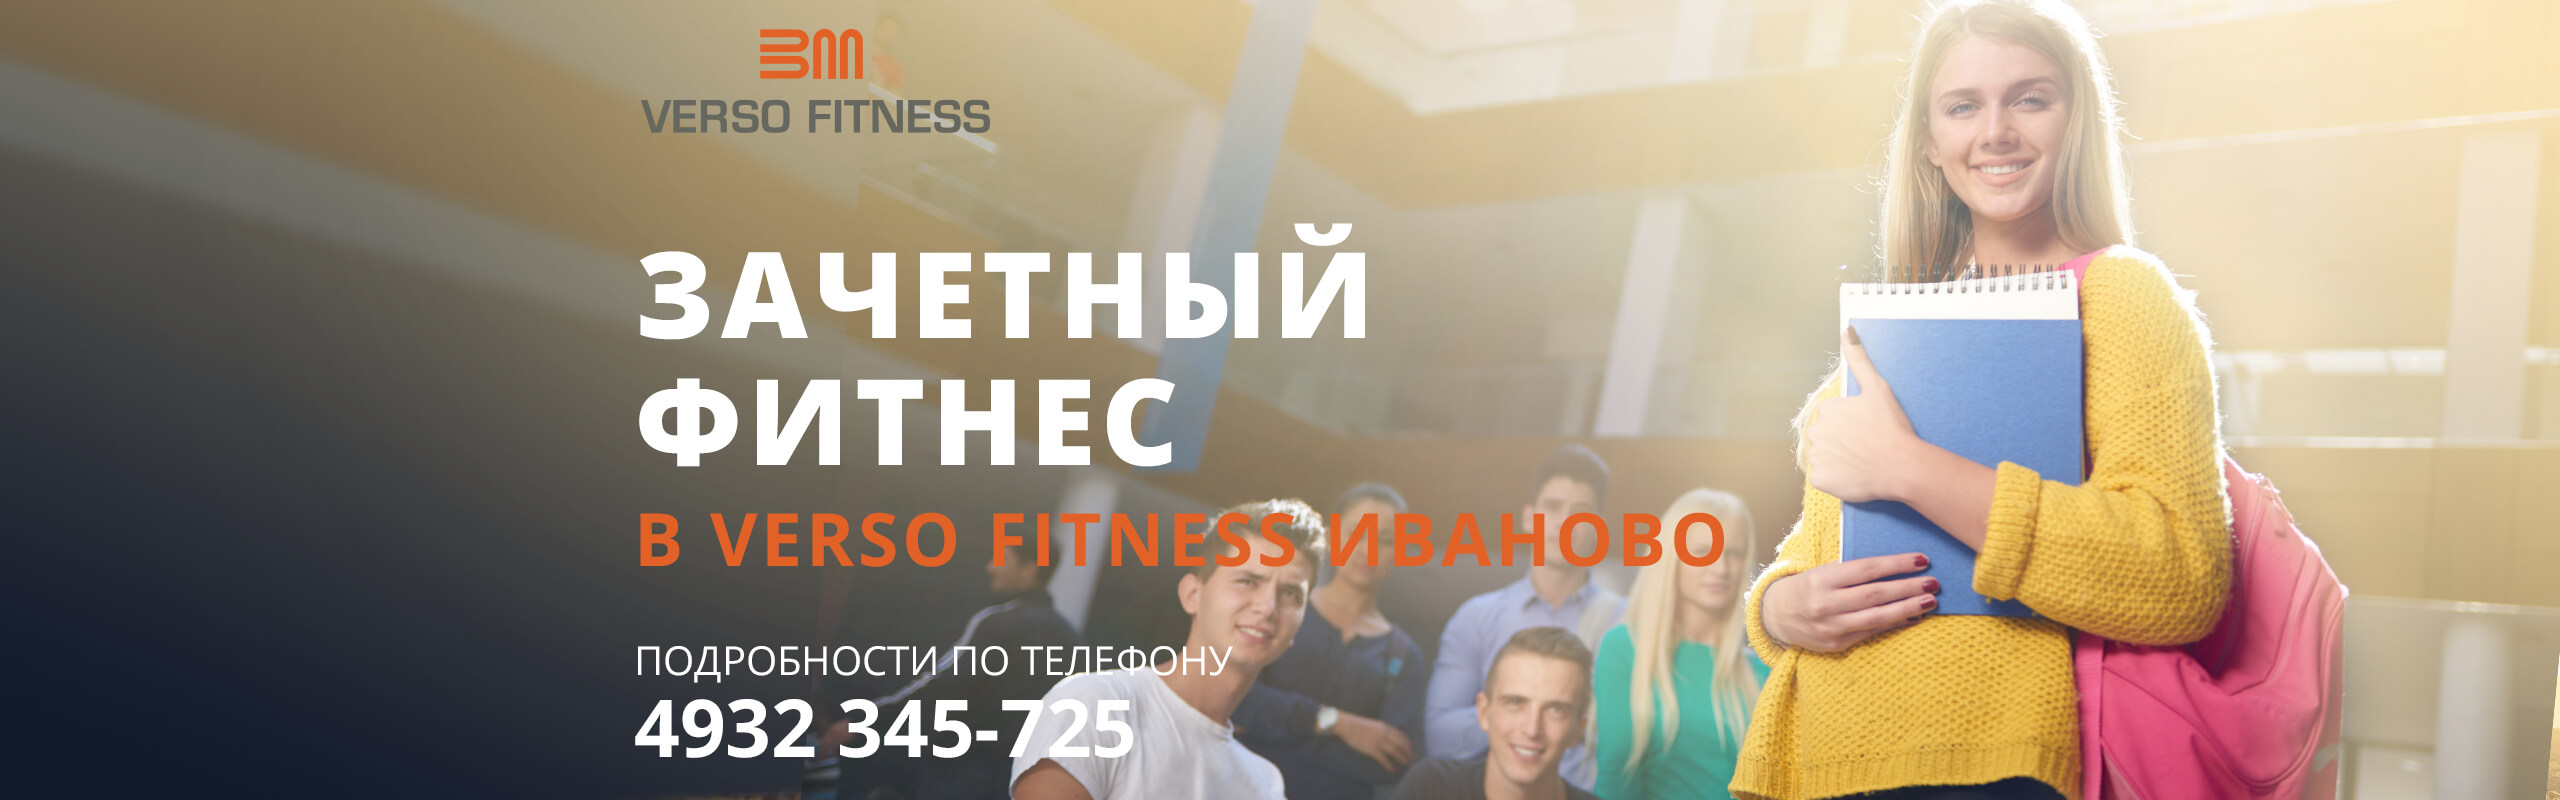 Зачетные недели в Verso Fitness Иваново